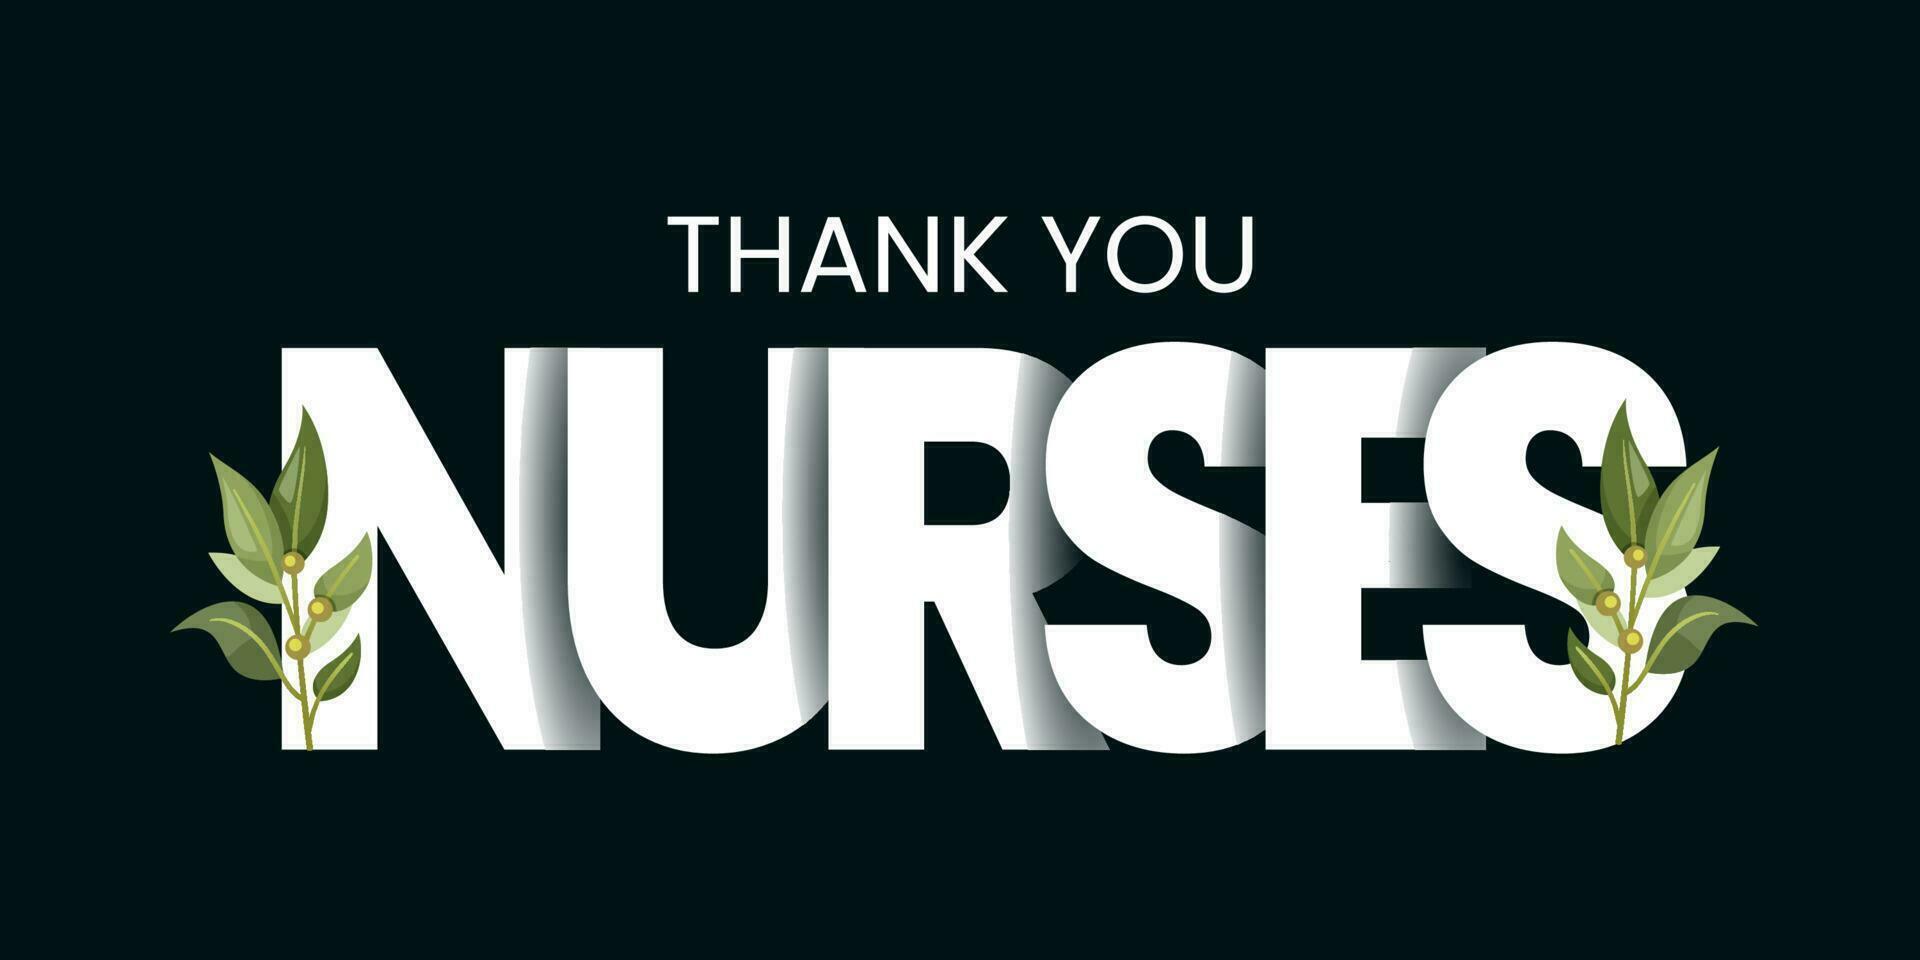 nacional enfermeiras dia é observado dentro Unidos estados em 6º pode do cada ano, obrigado você enfermeiros. vetor ilustração.